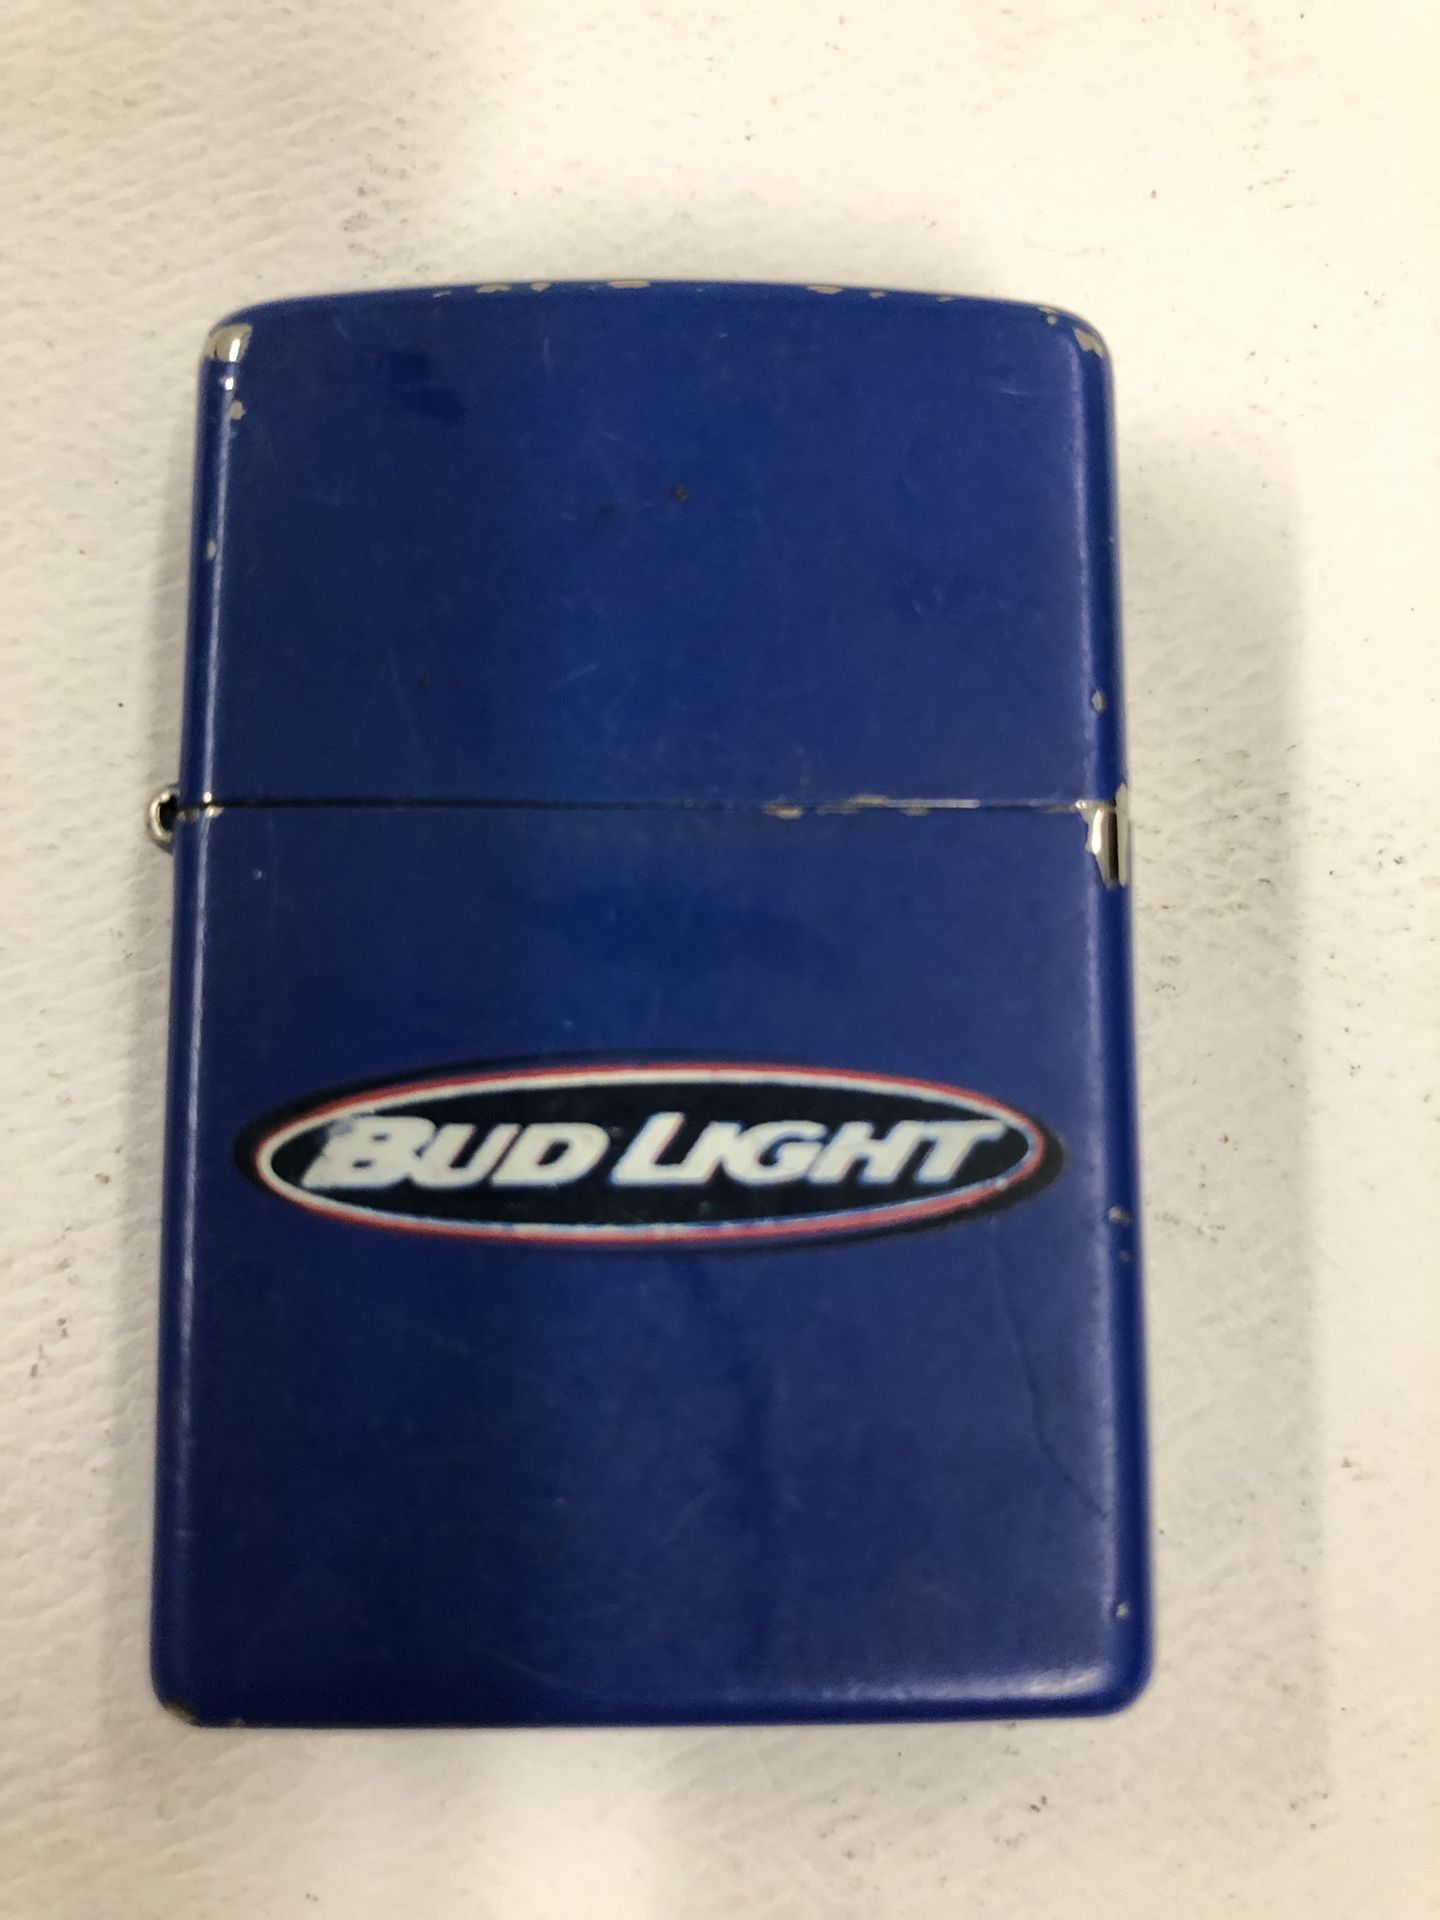 2000 Bud Light Zippo Lighter